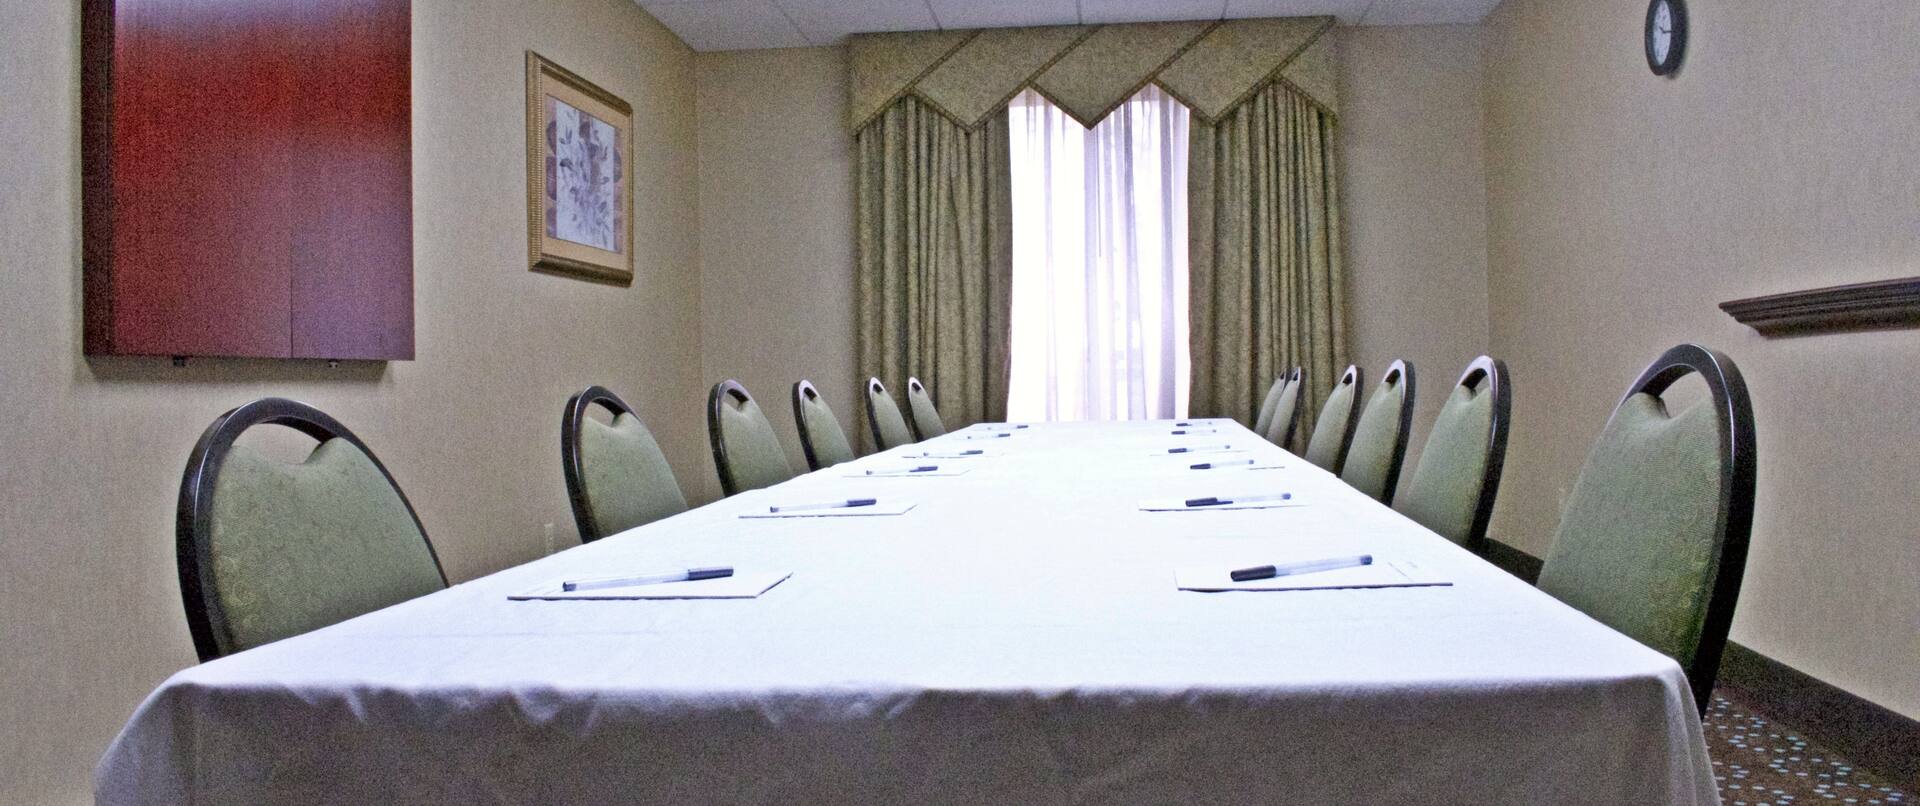 Meeting Room Space